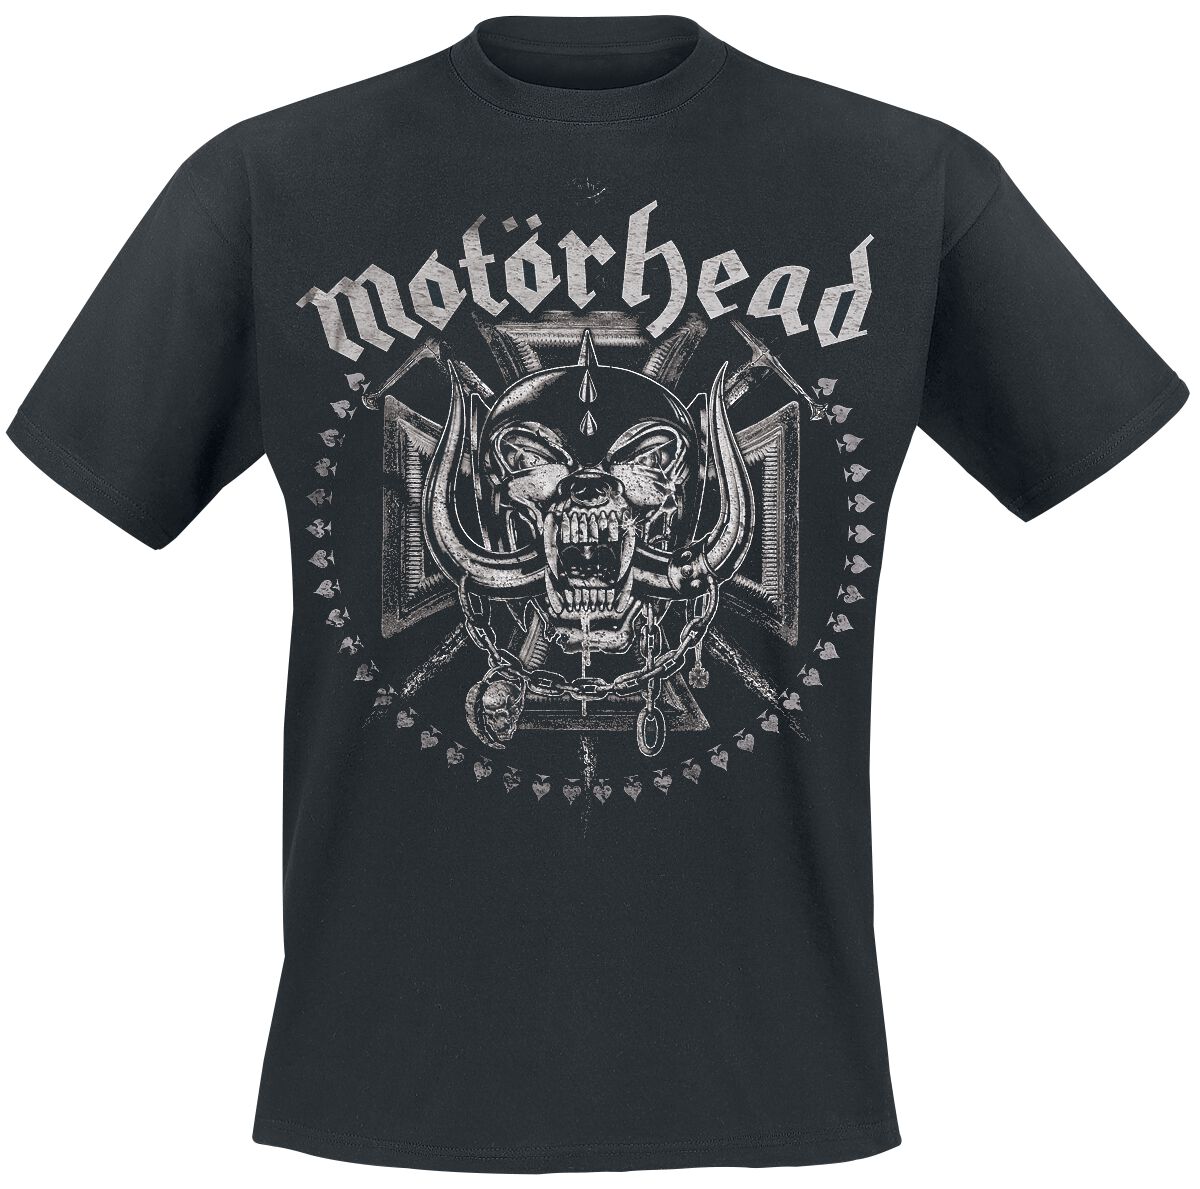 Motörhead T-Shirt - Iron Cross Swords - M bis XXL - für Männer - Größe XL - schwarz  - EMP exklusives Merchandise!